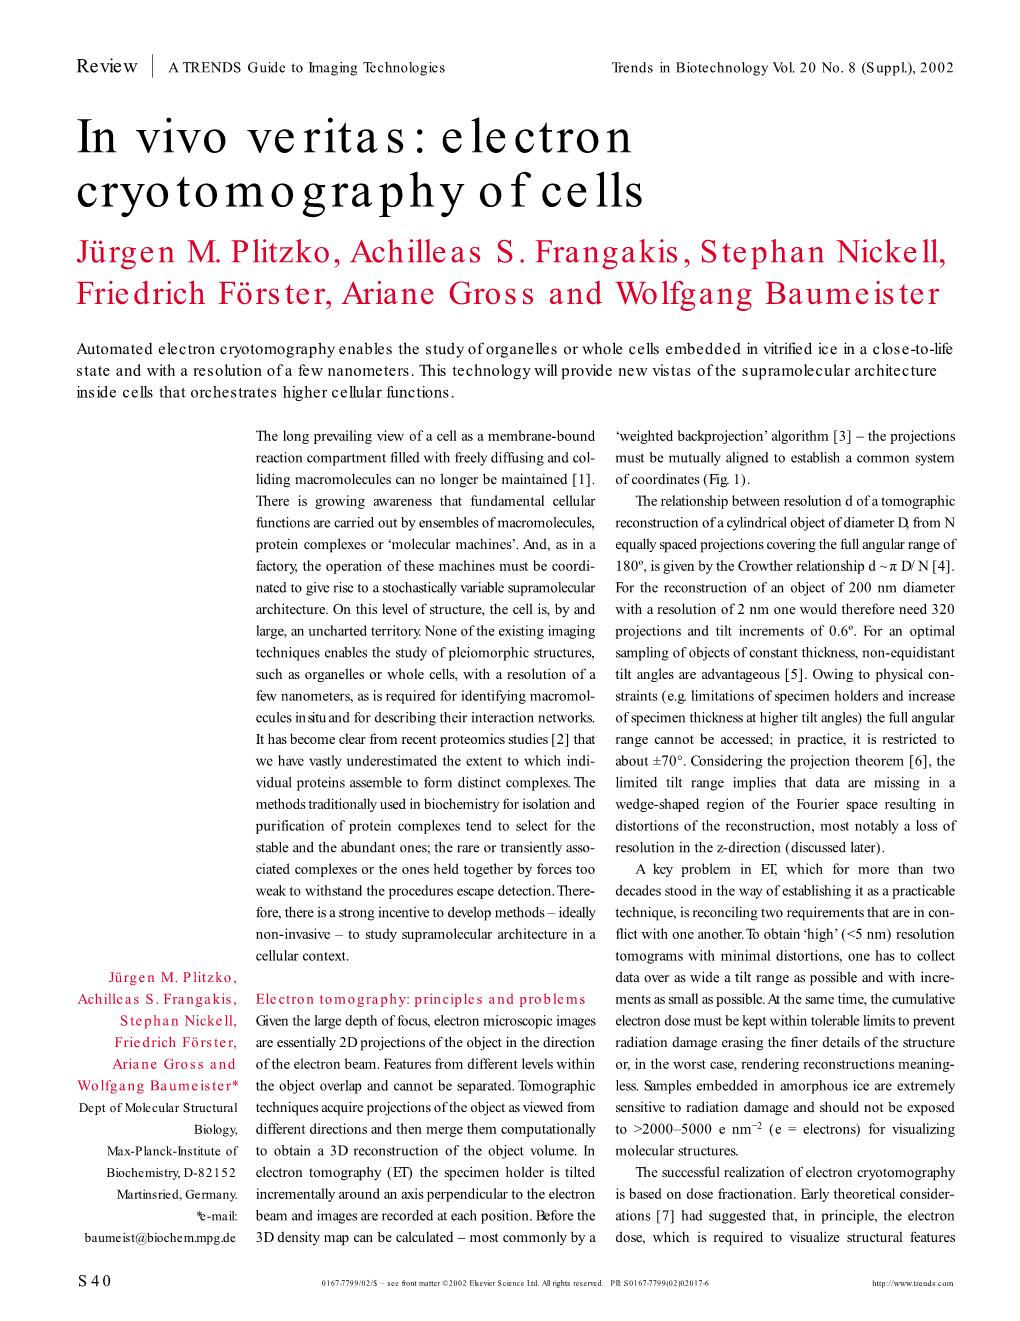 Electron Cryotomography of Cells Jürgen M